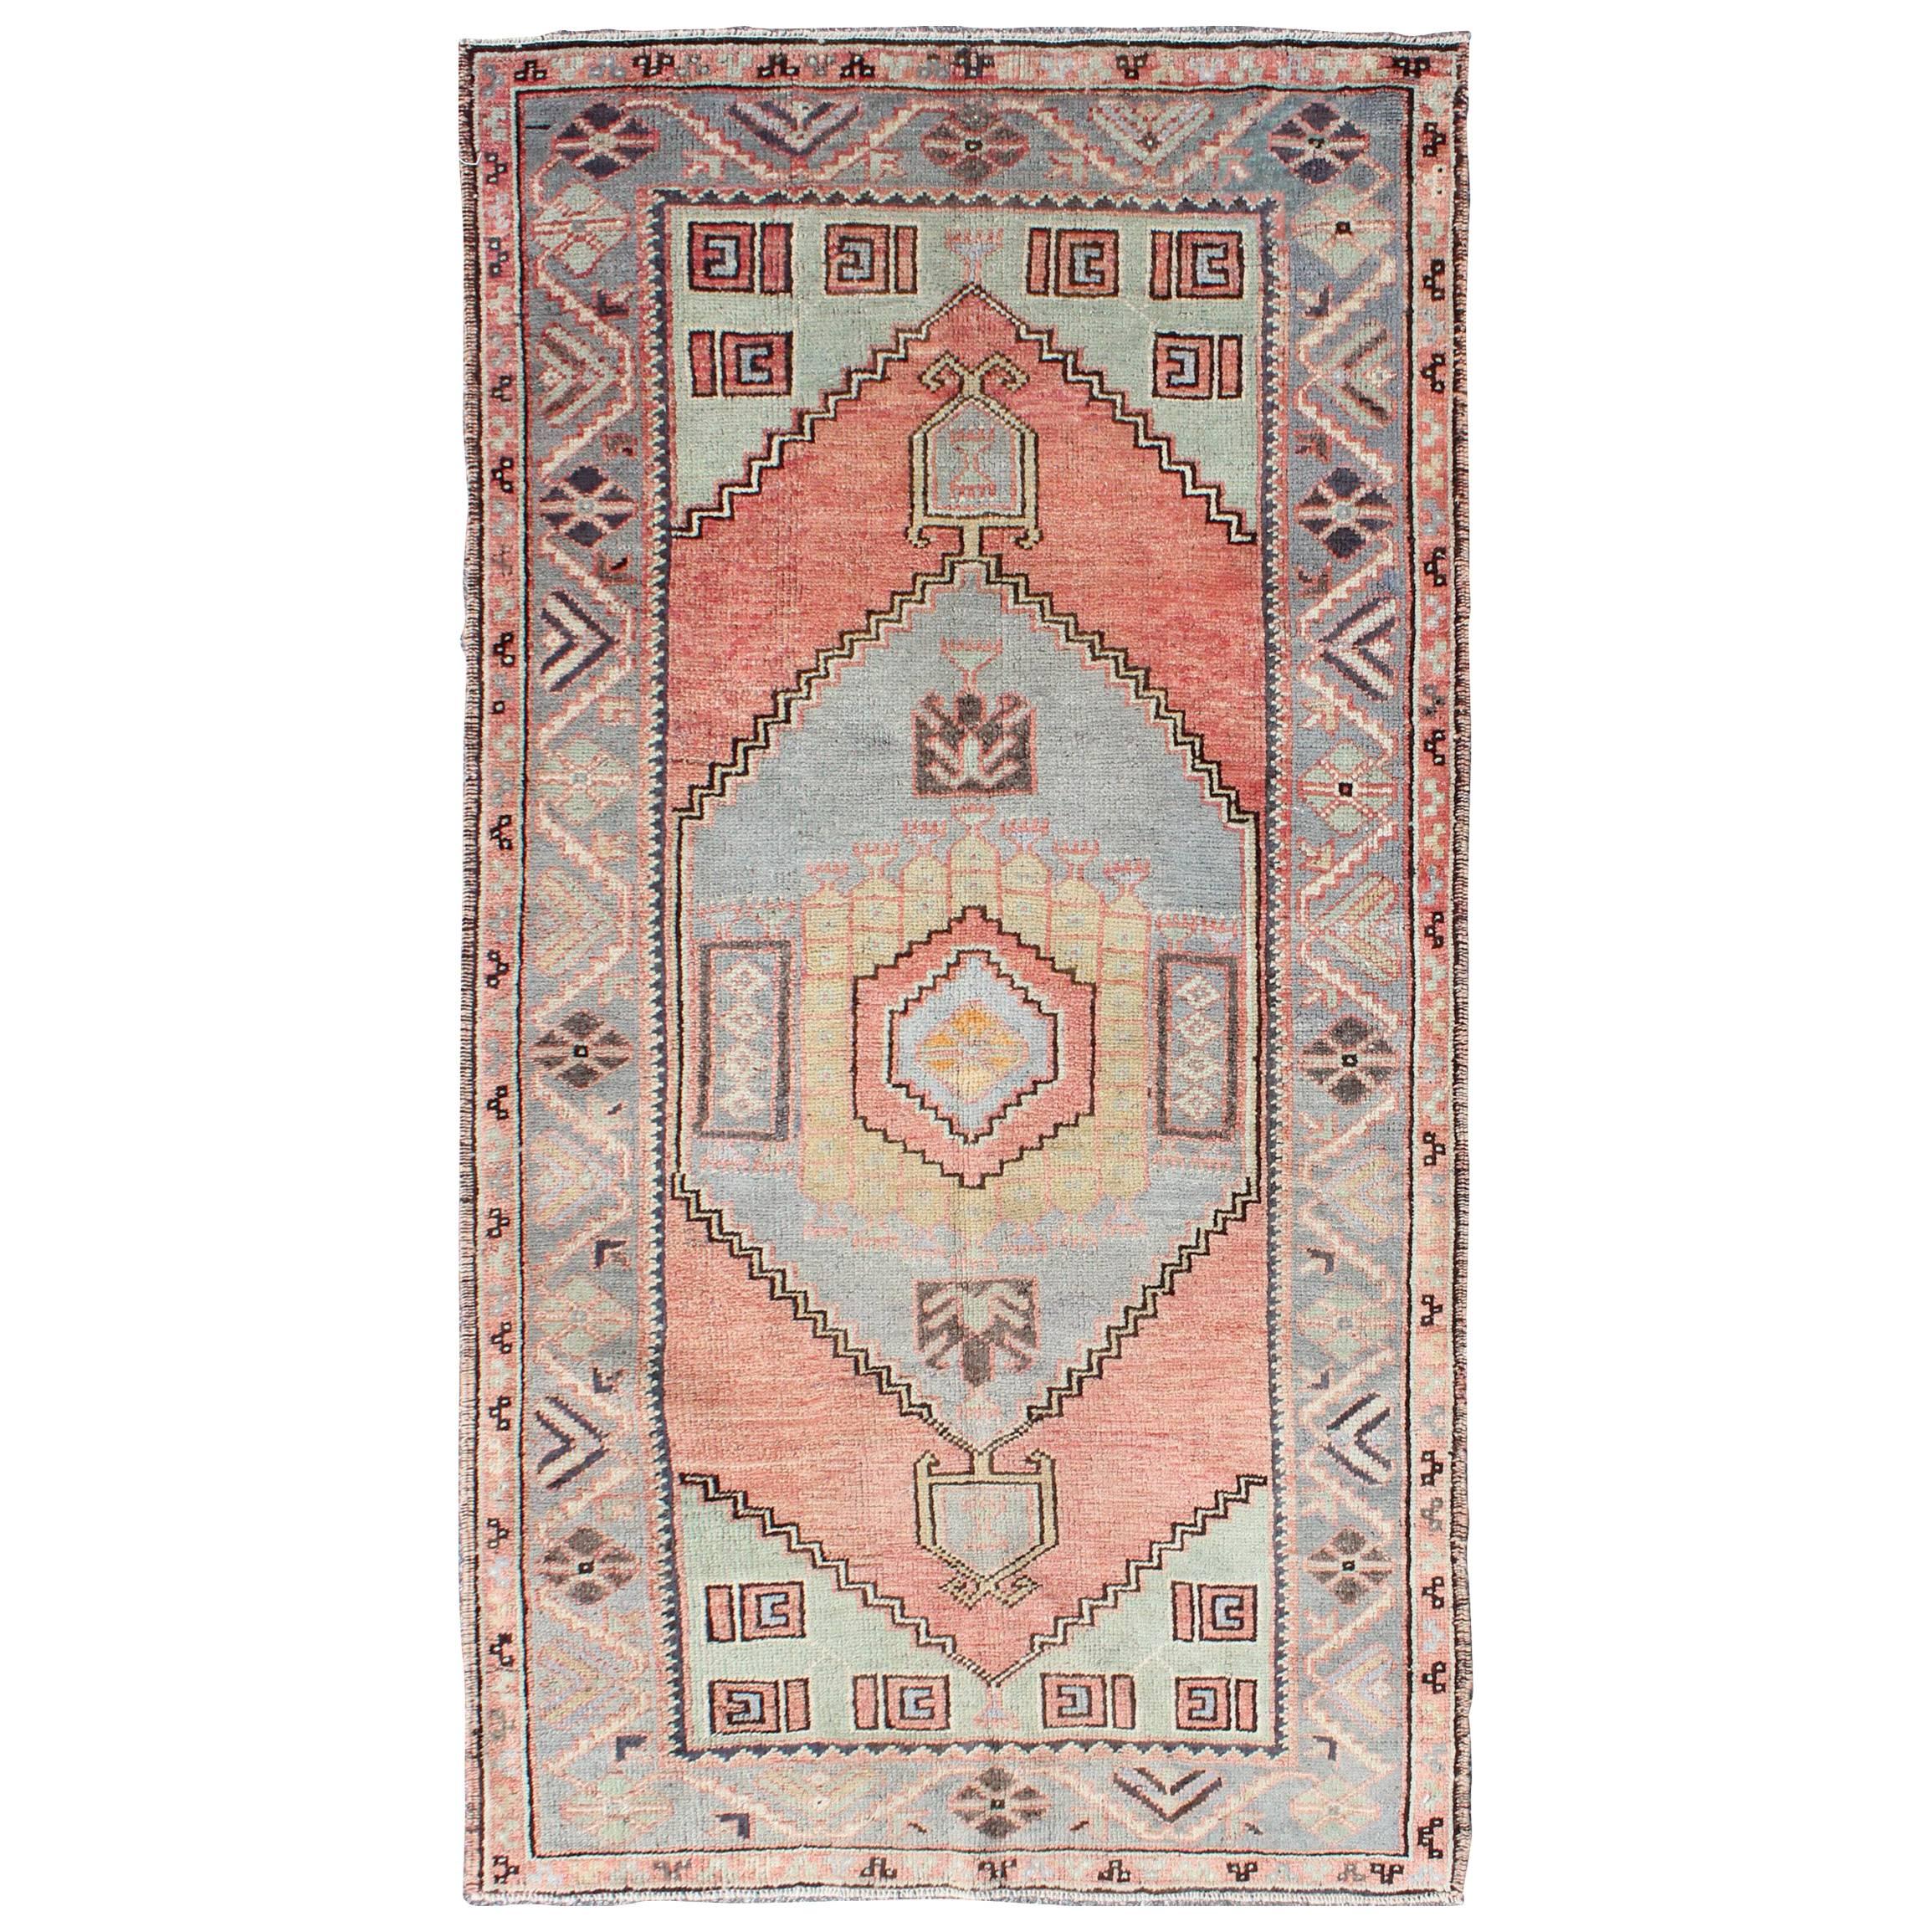 Vintage Turkish Oushak Carpet with Tribal Design in Orangish-Red, Green & Gray